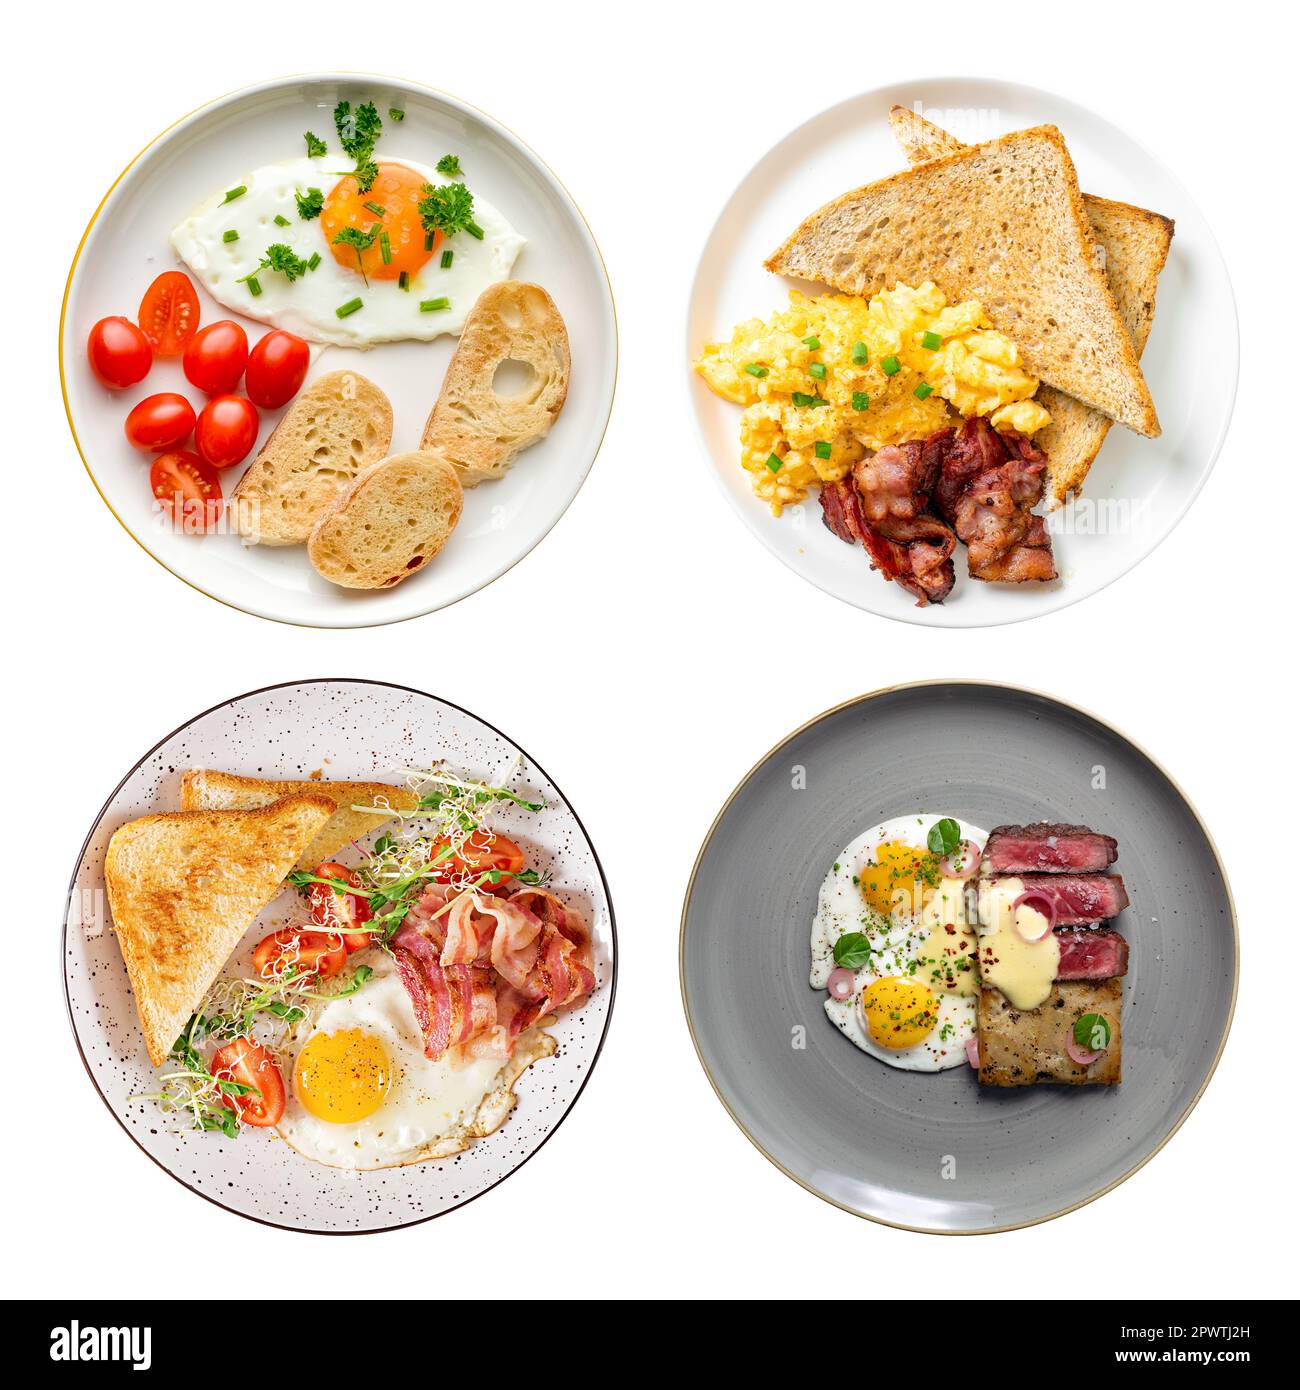 Set di varie colazioni all'inglese con uova fritte o strapazzate, pancetta e verdure servite in piatti, vista dall'alto isolata Foto Stock